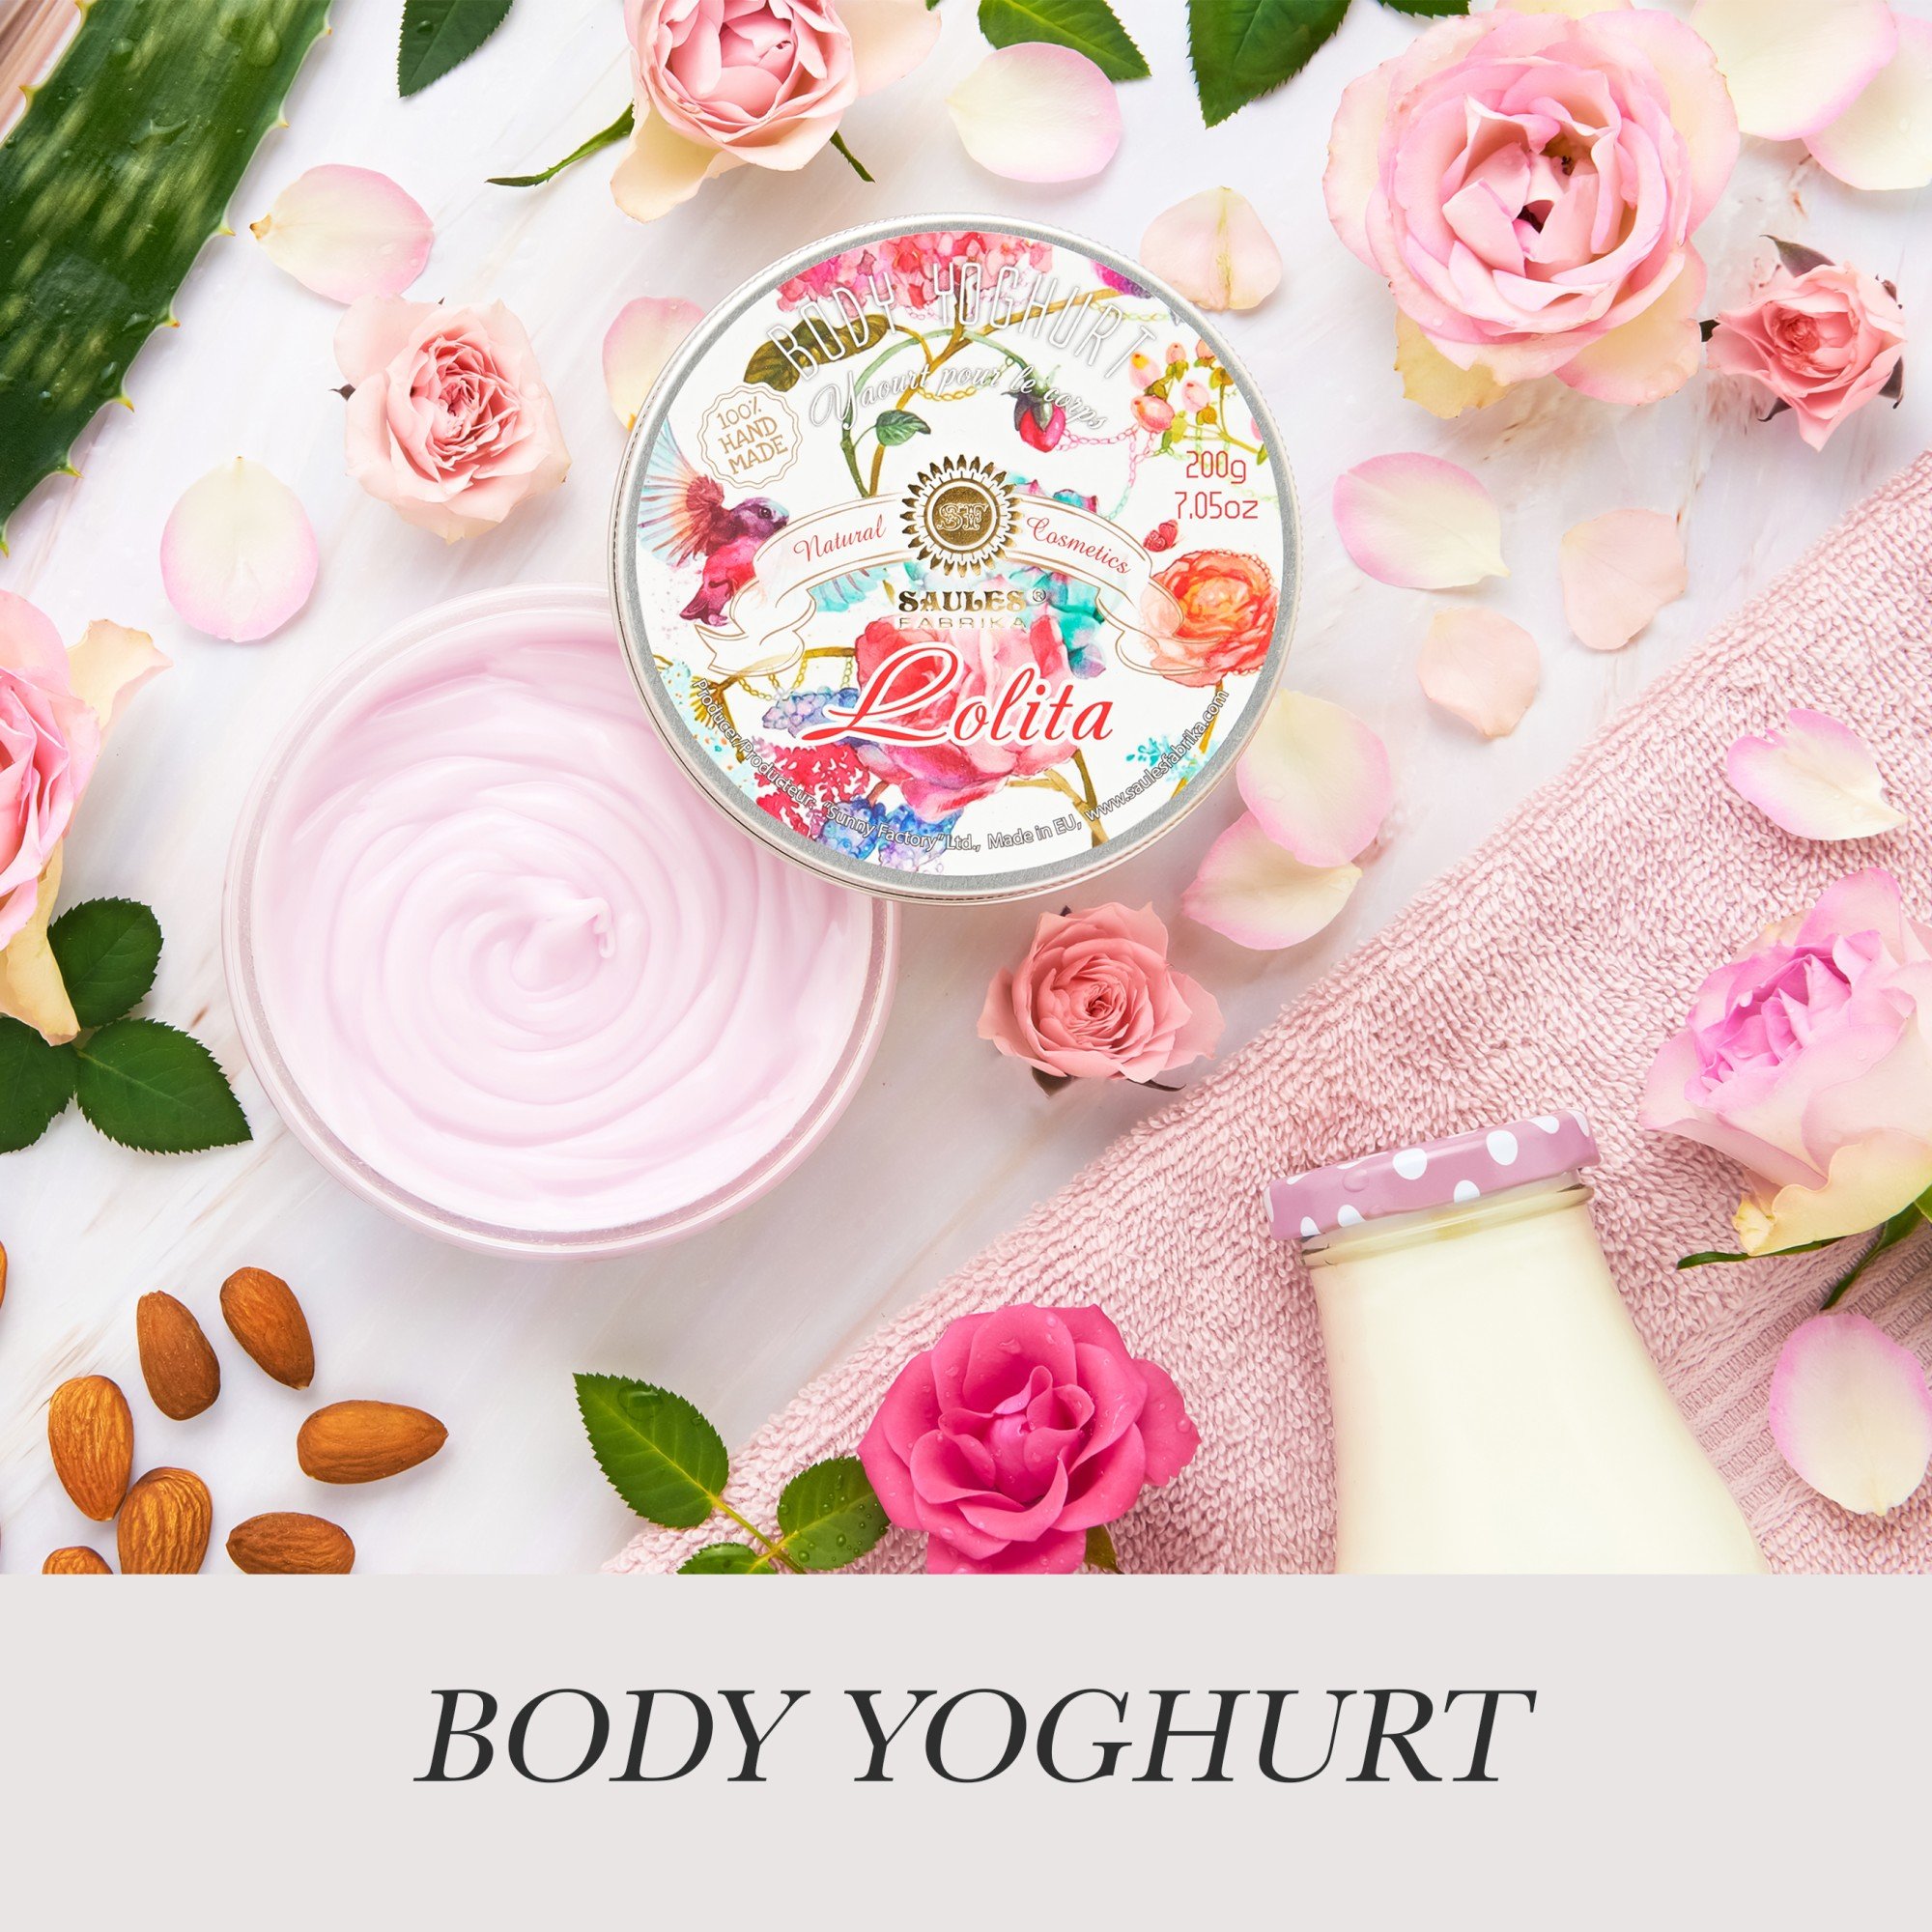 Body Yoghurt - Briis AS